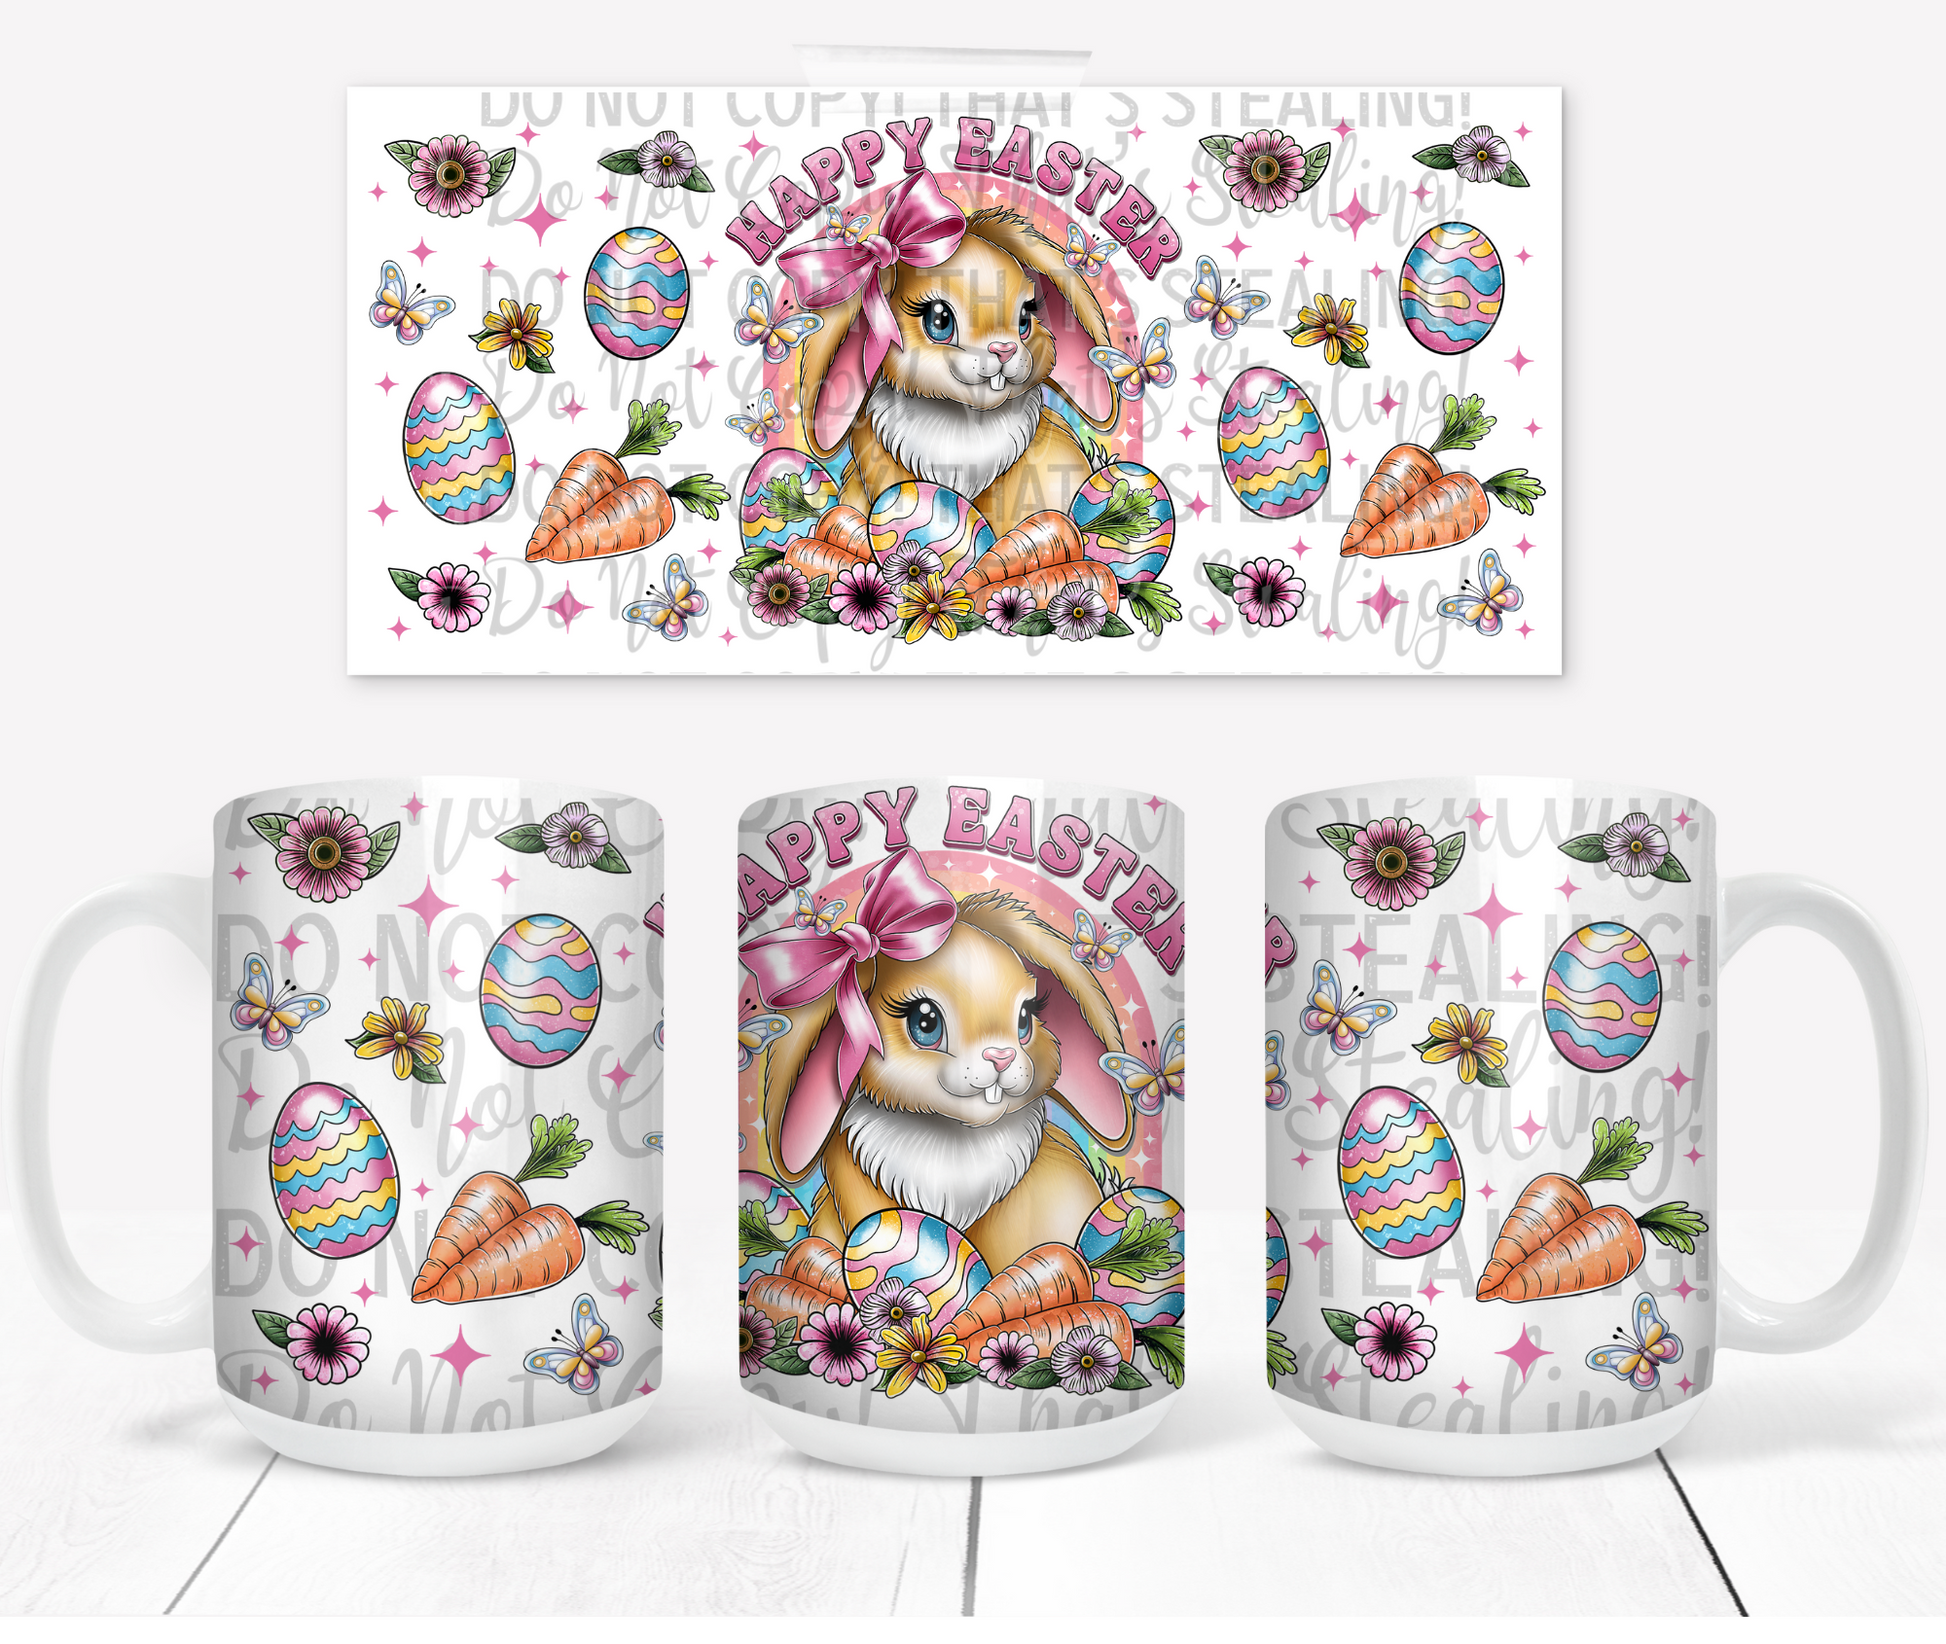 Happy Easter Bunny Coffee mug - Mayan Sub Shop